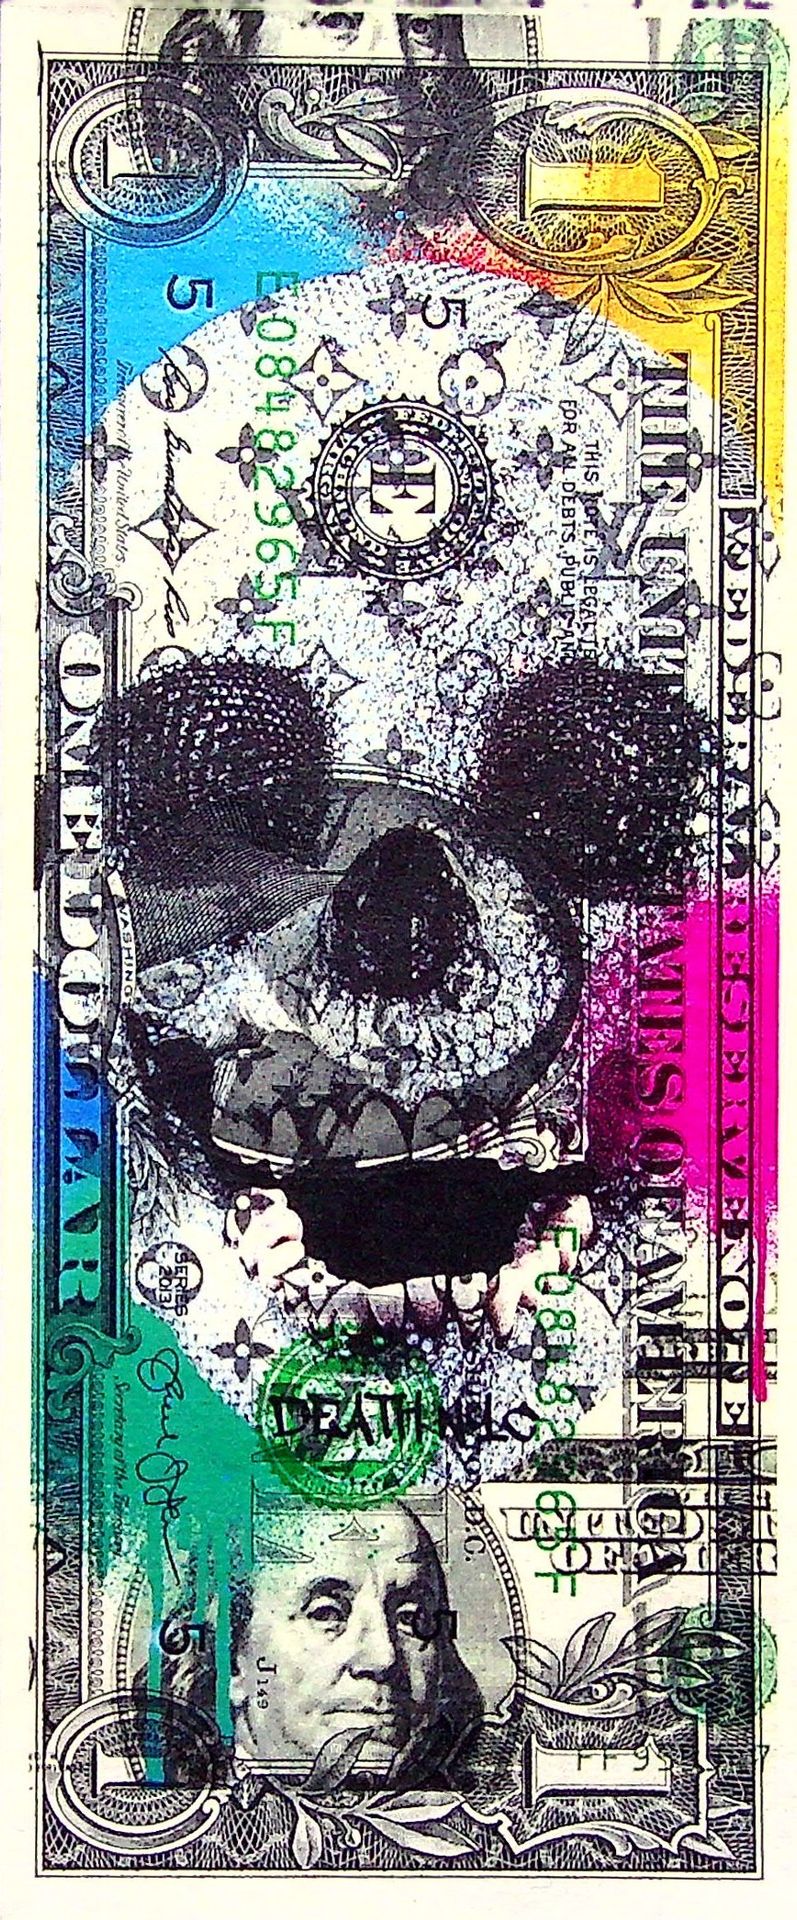 Death NYC 纽约市的死亡

多色背景的骷髅头

1美元纸币上的死亡纽约原创丝网版画--崛起的美国街头艺术艺术家

在纸条的背面签名

限量发行10份

&hellip;